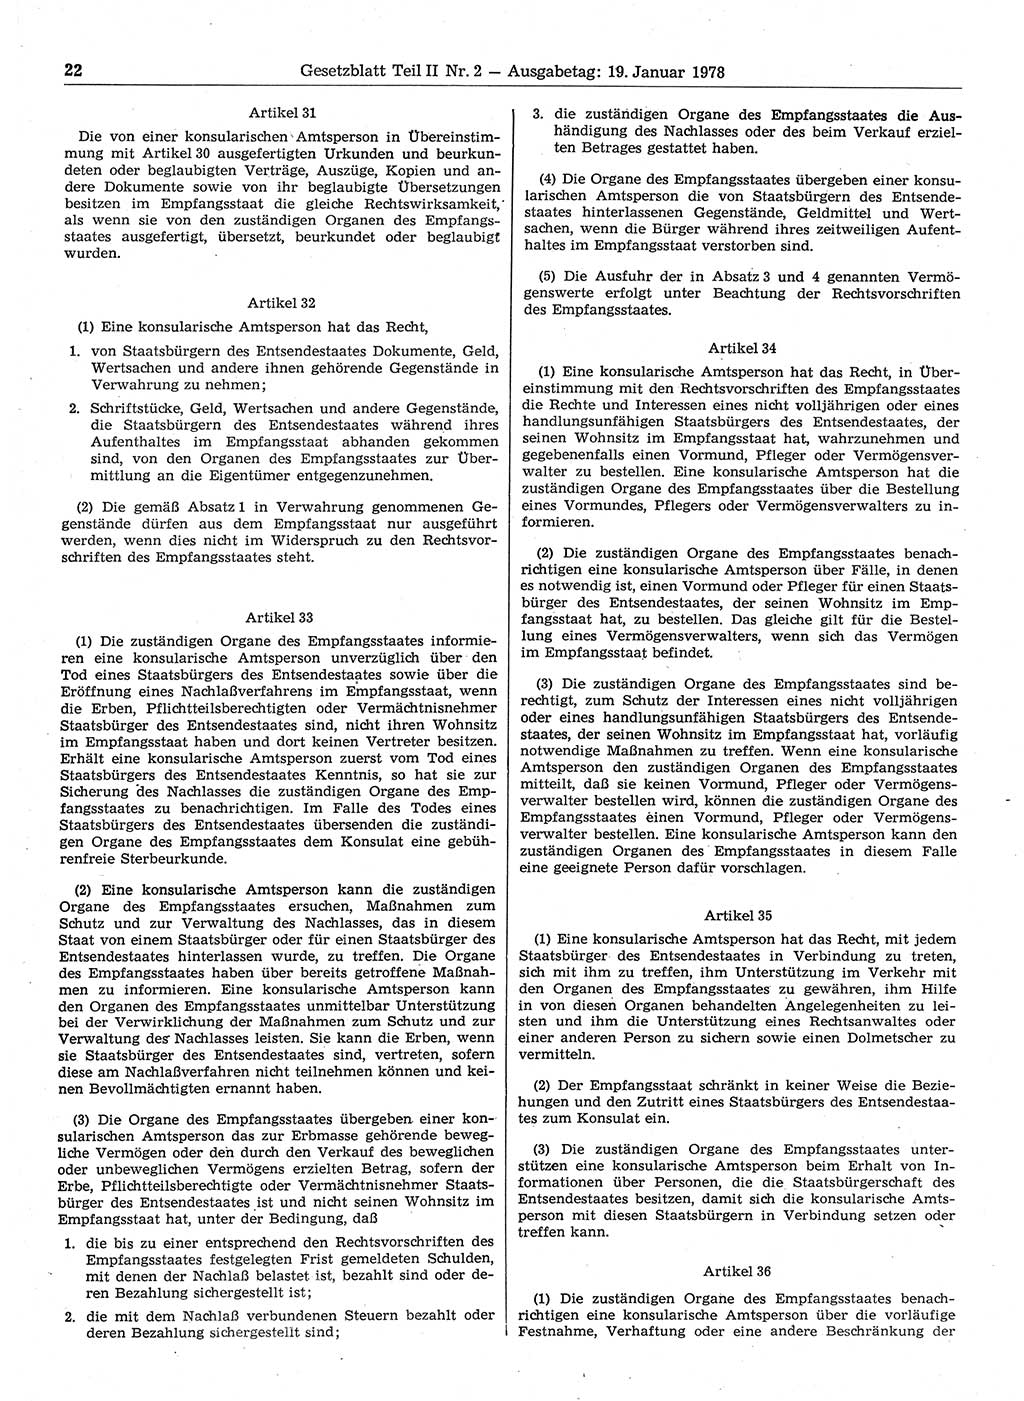 Gesetzblatt (GBl.) der Deutschen Demokratischen Republik (DDR) Teil ⅠⅠ 1978, Seite 22 (GBl. DDR ⅠⅠ 1978, S. 22)